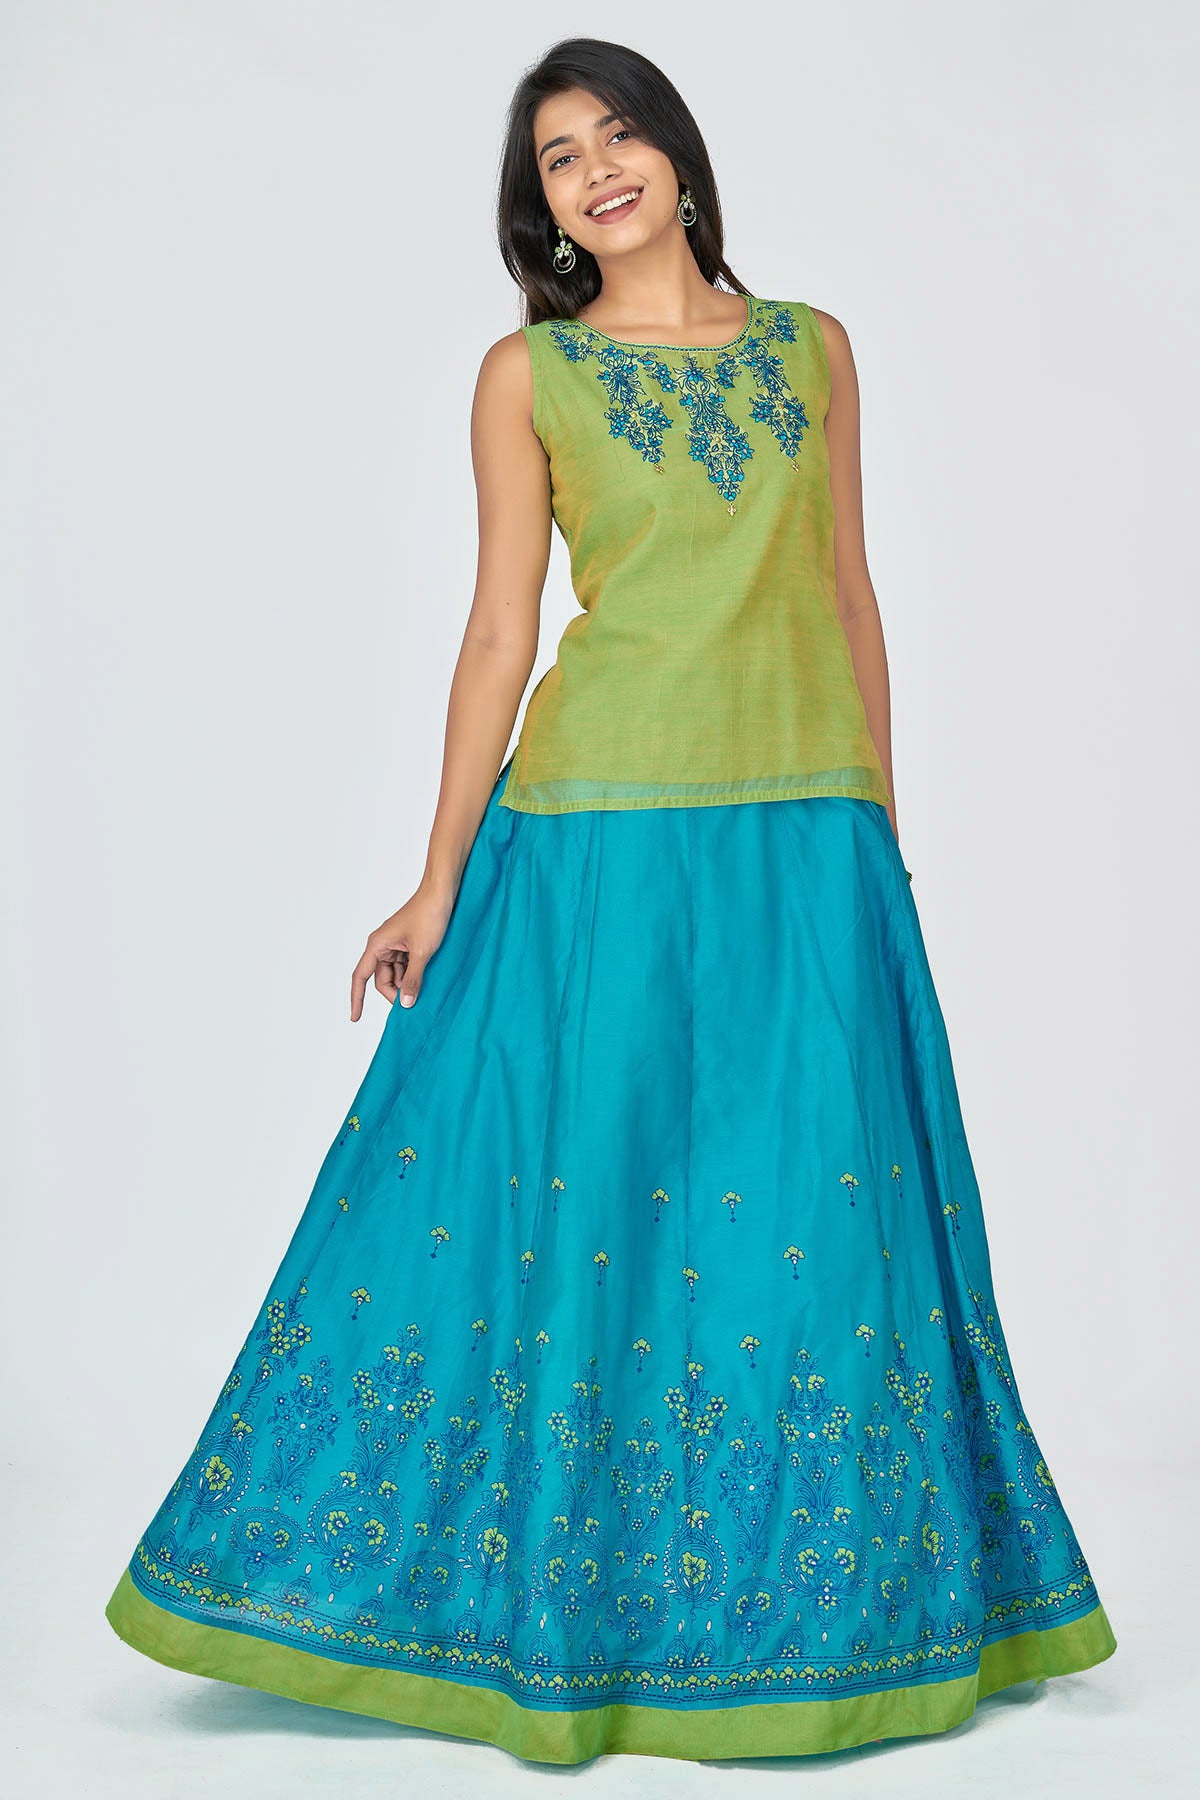 Floral & Zari Embroidered Women's Skirt Set - Green & Blue